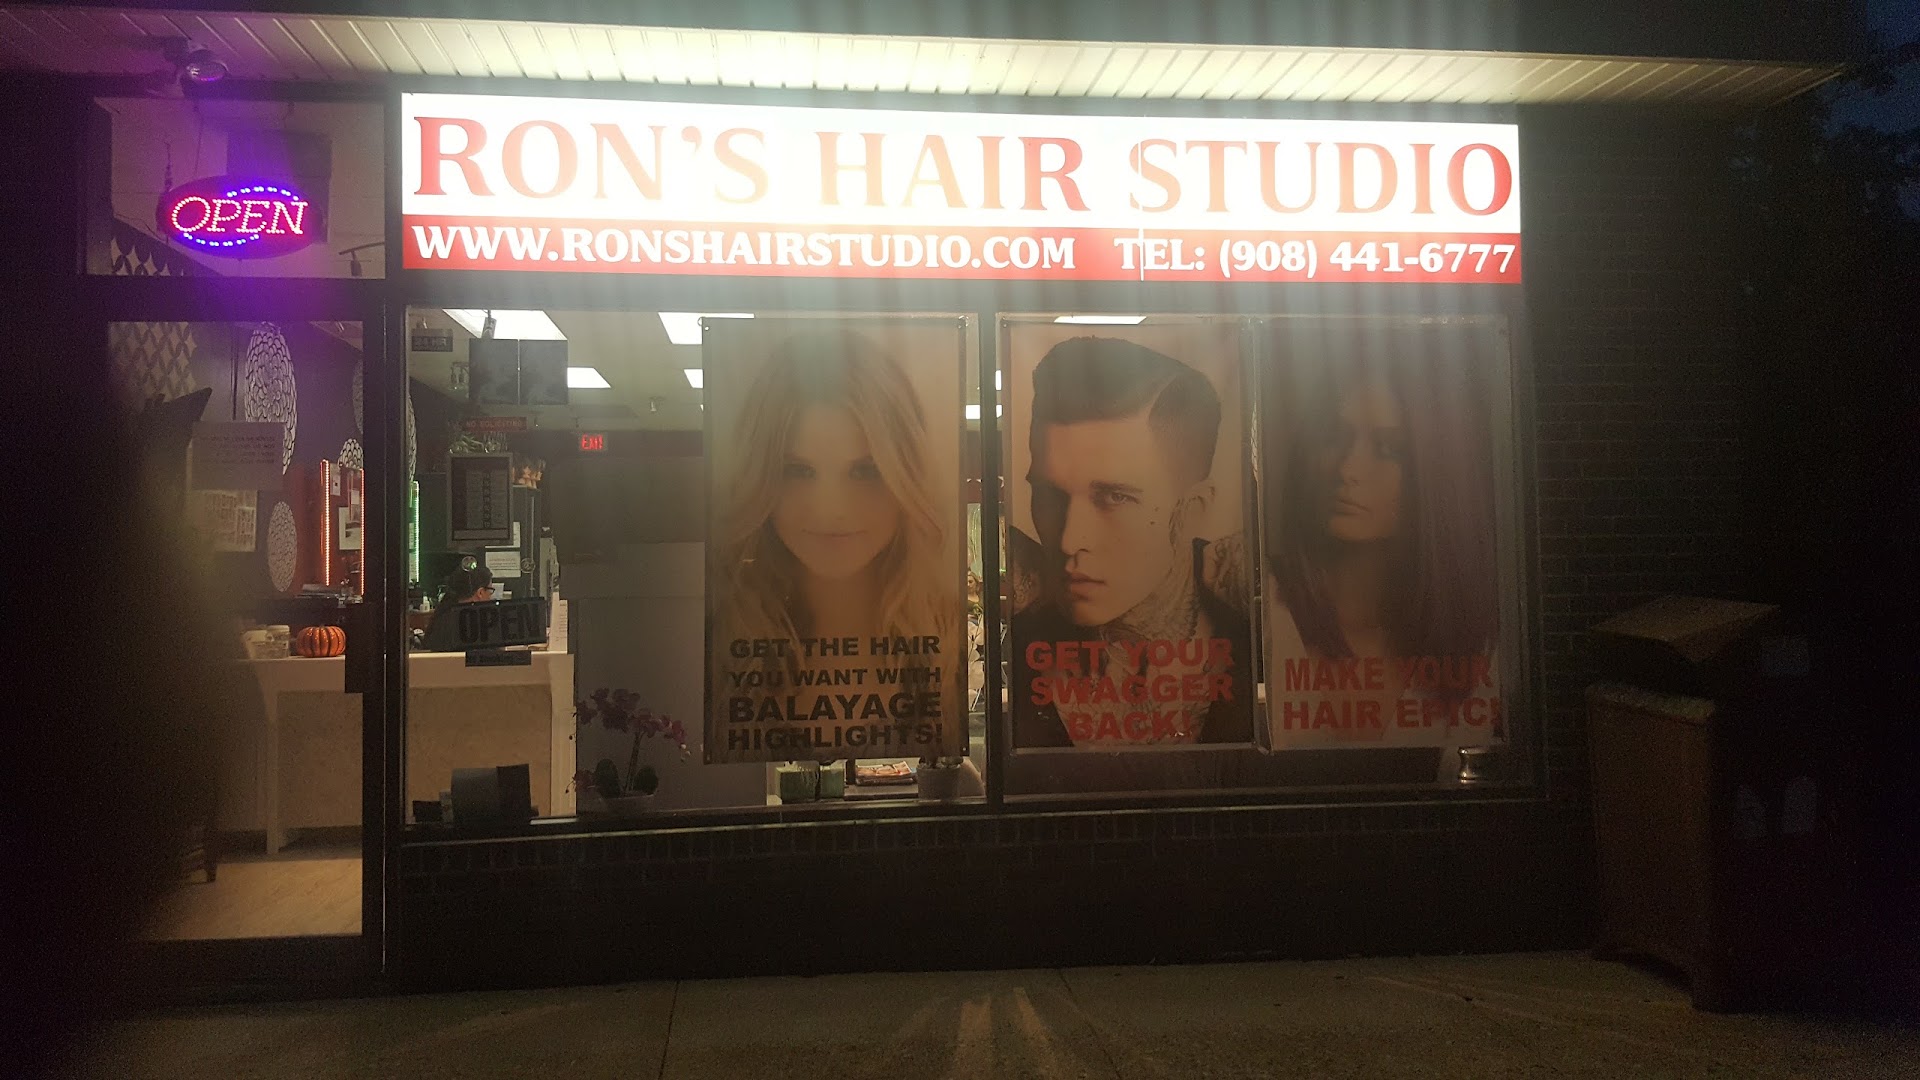 Ron's Hair Studio